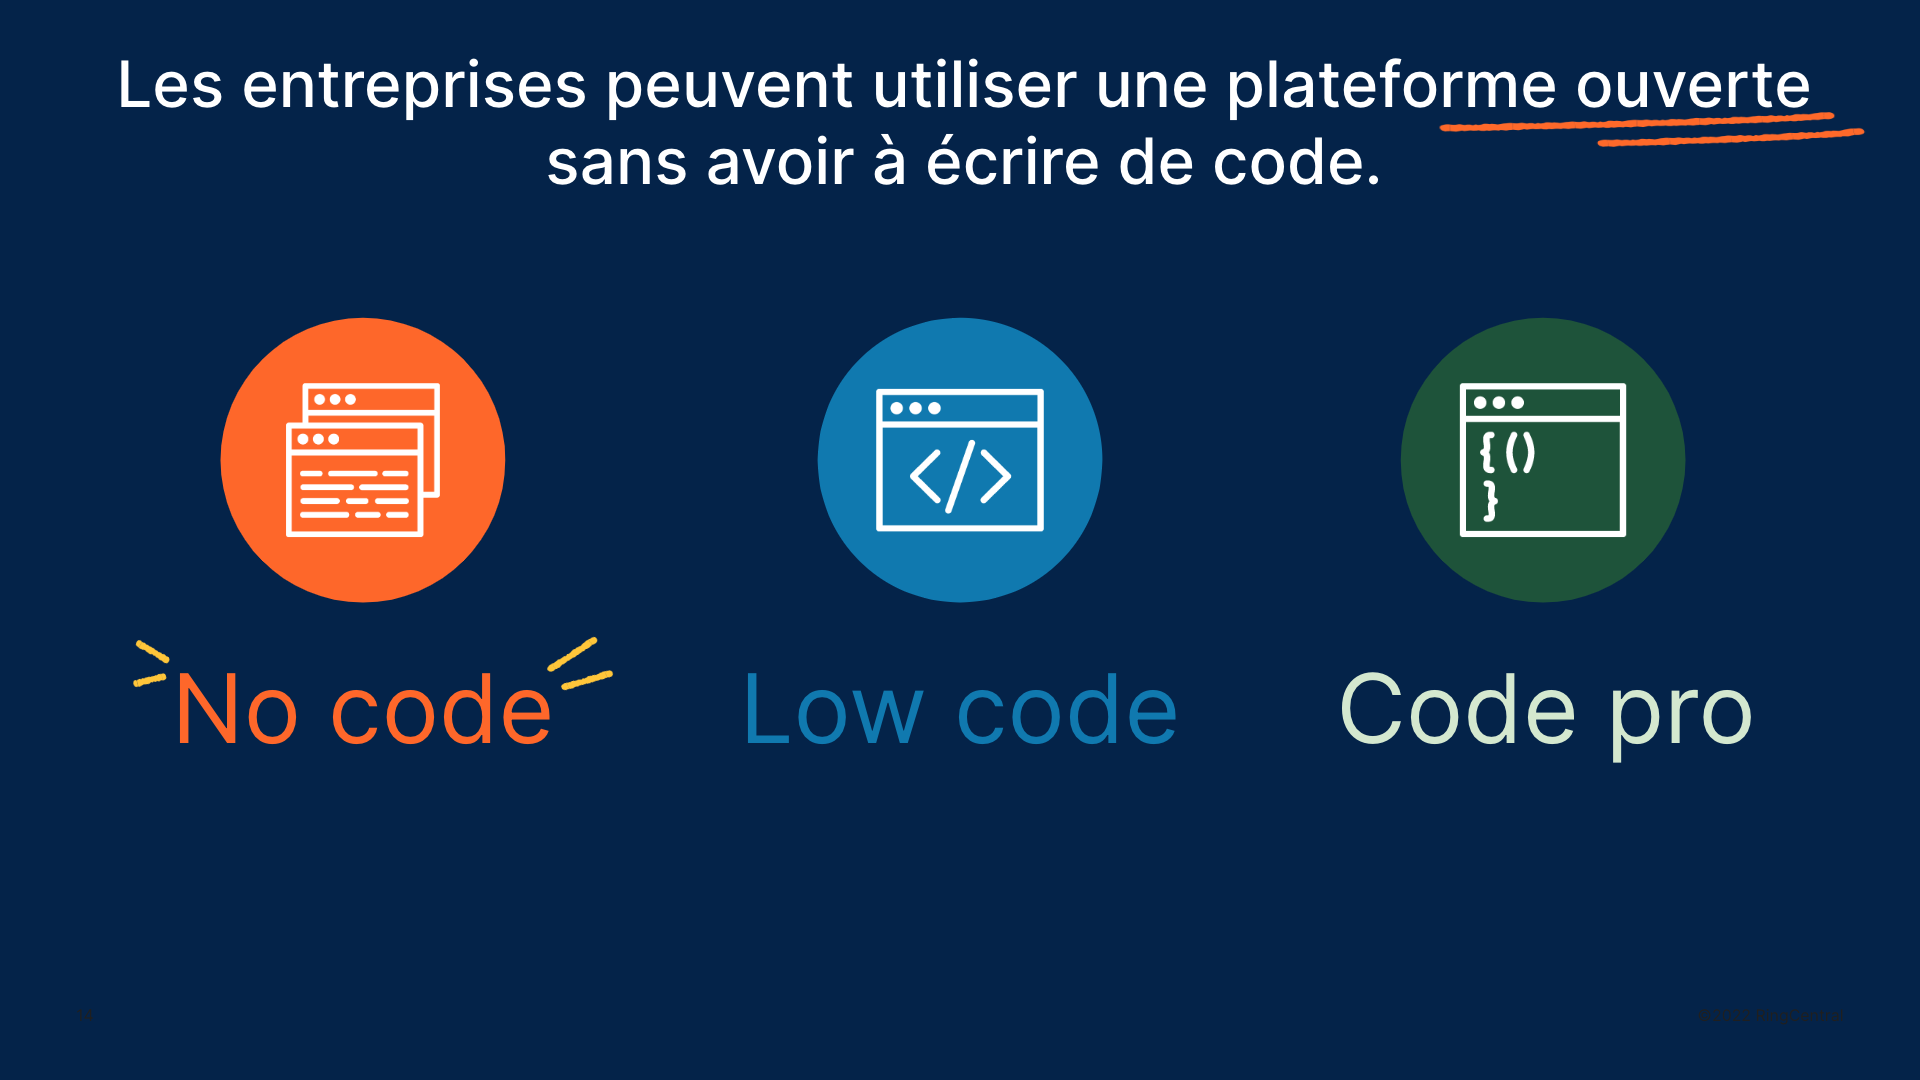 Les entreprises peuvent utiliser une plateforme ouverte sans avoir à écrire de code : no code, low code, code pro